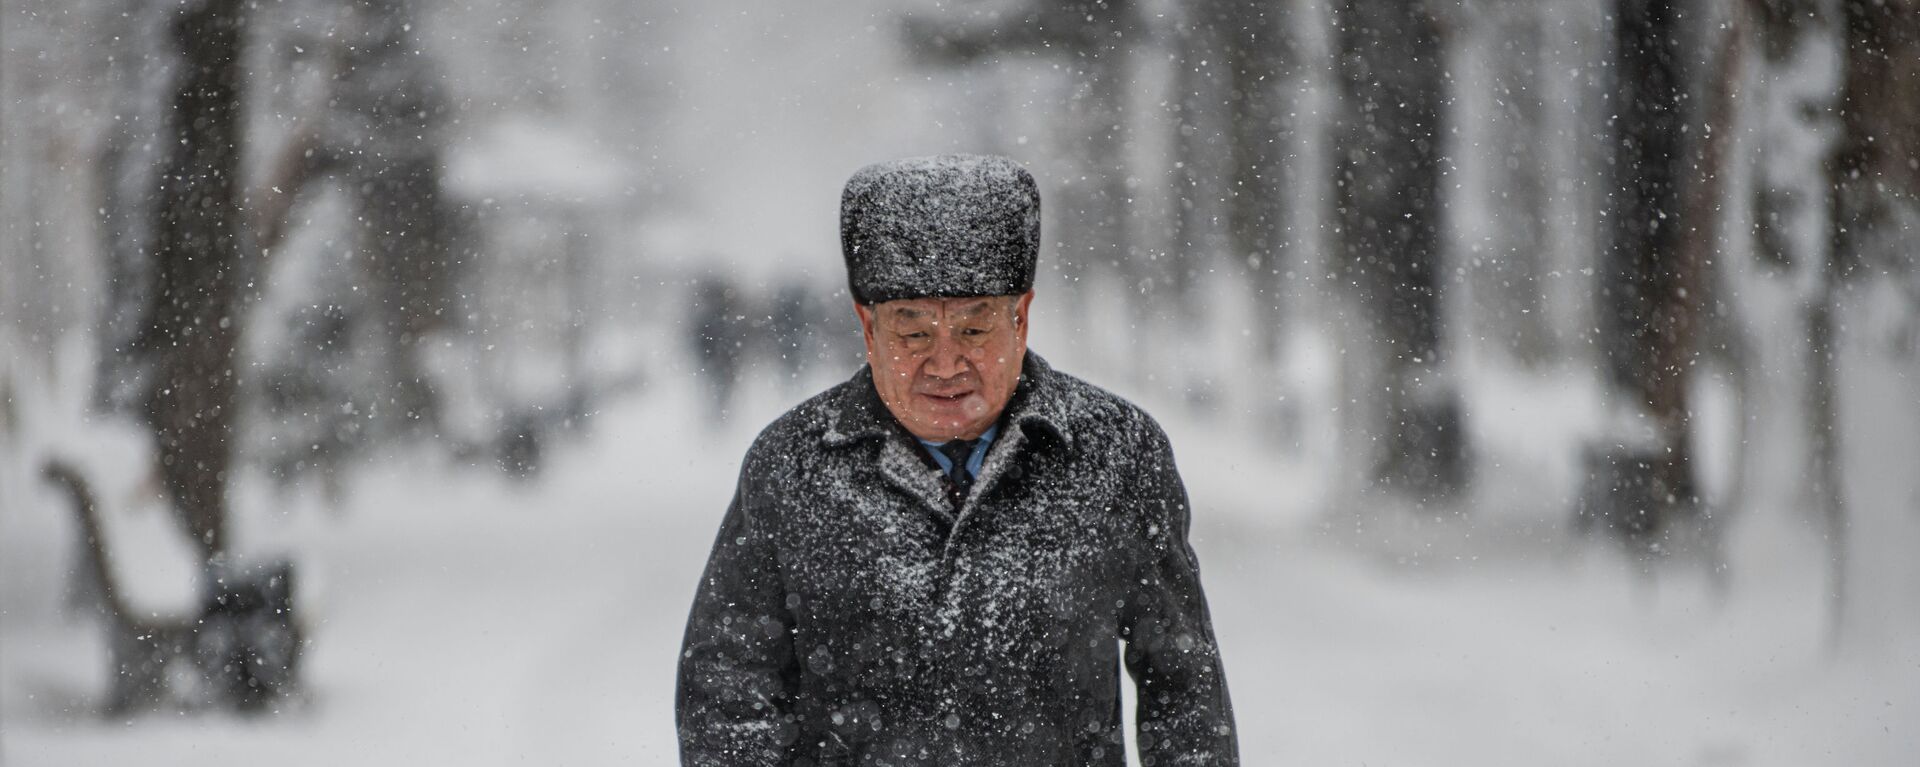 Первый снегопад в Бишкеке в 2021 году - Sputnik Кыргызстан, 1920, 13.12.2021